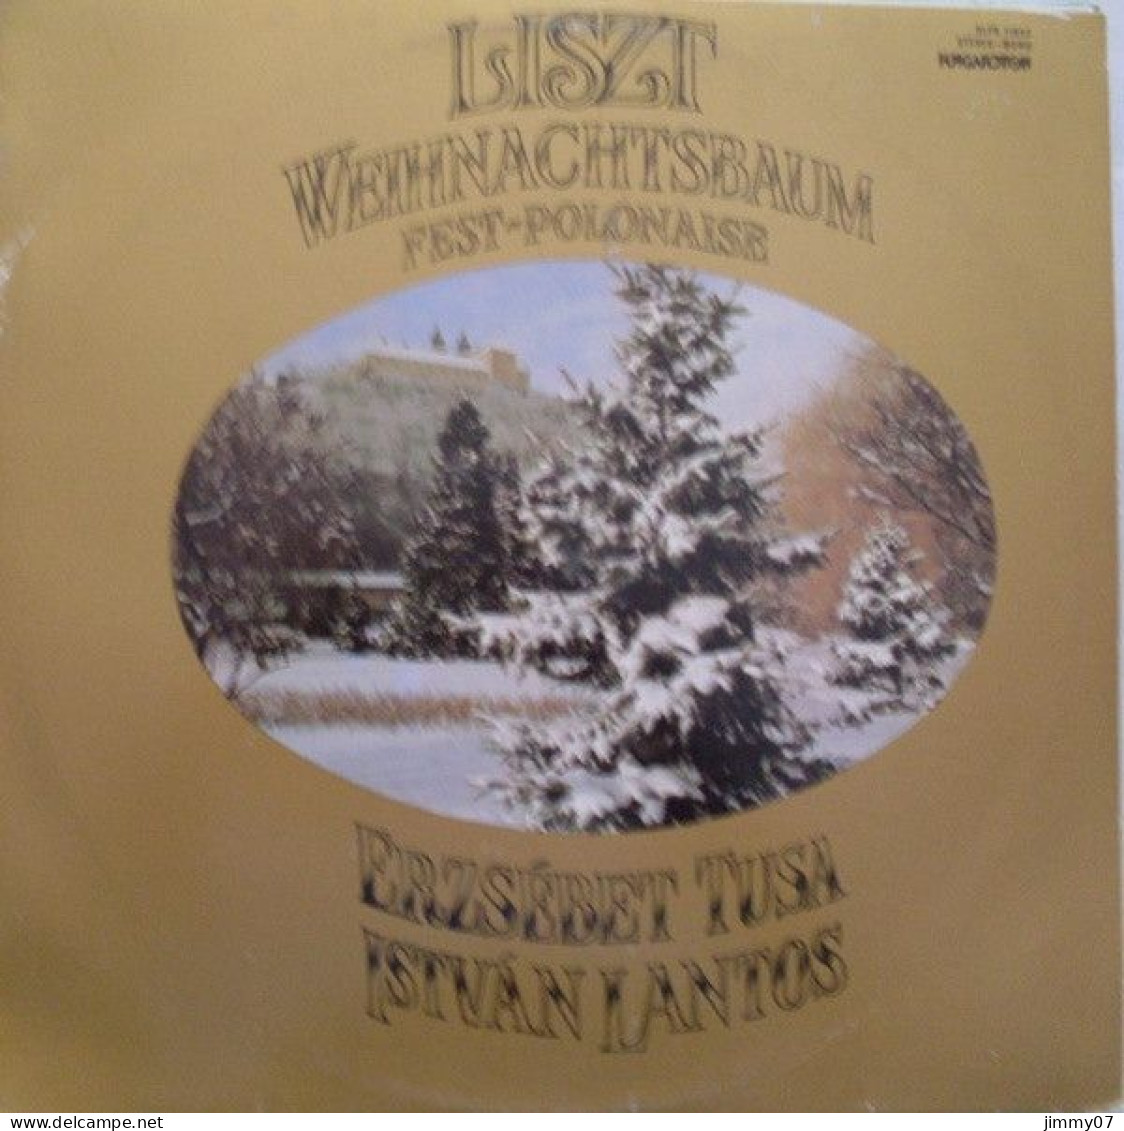 Franz Liszt, Erzsébet Tusa*, István Lantos* - Weihnachtsbaum - Fest-Polonaise (LP, Album) - Classique